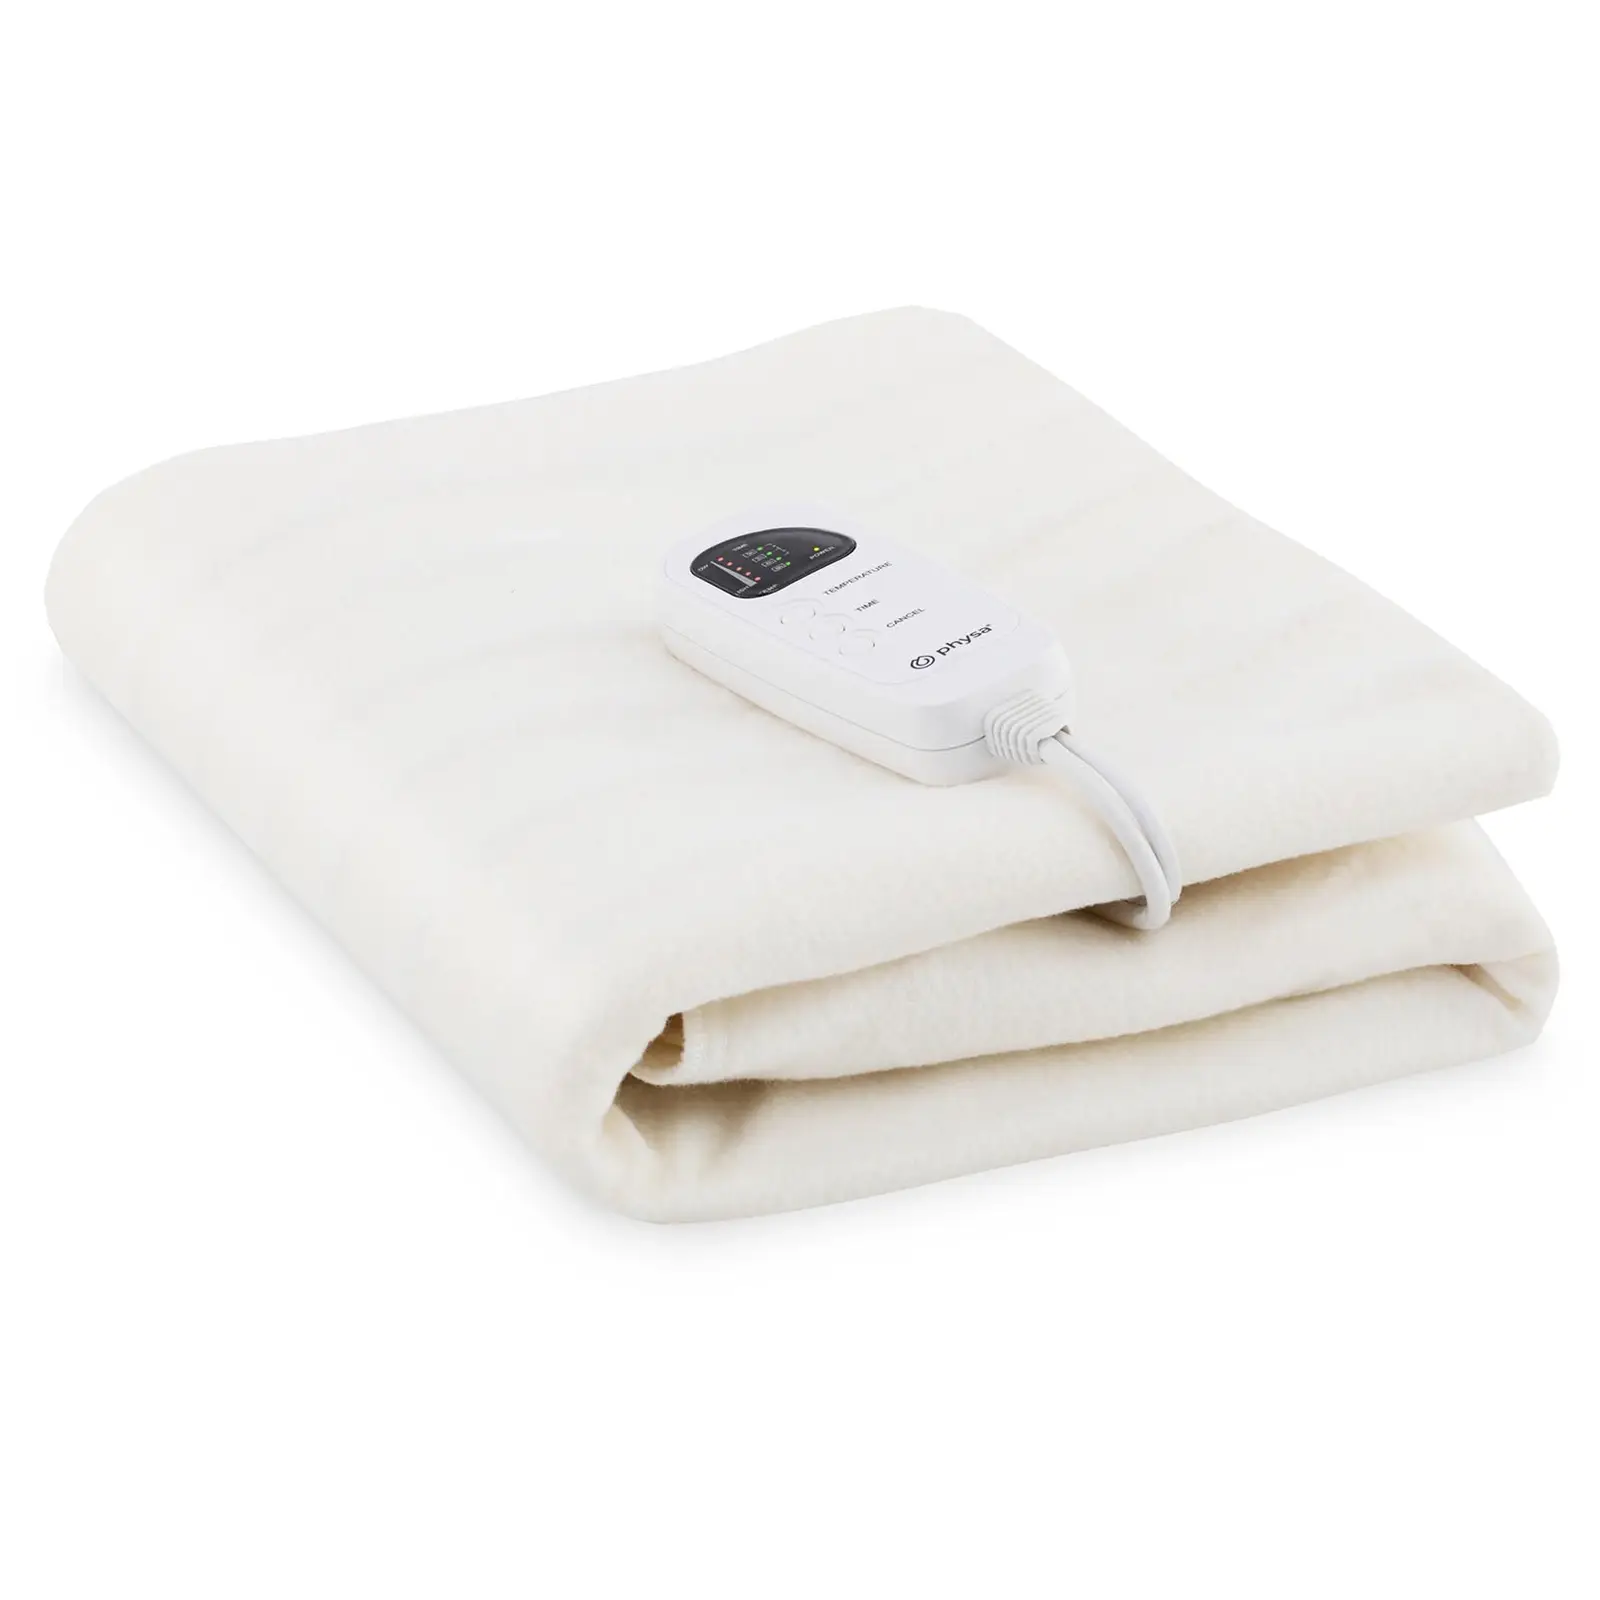 Cobertor de aquecimento para cama - 180 x 75 cm - 60 W